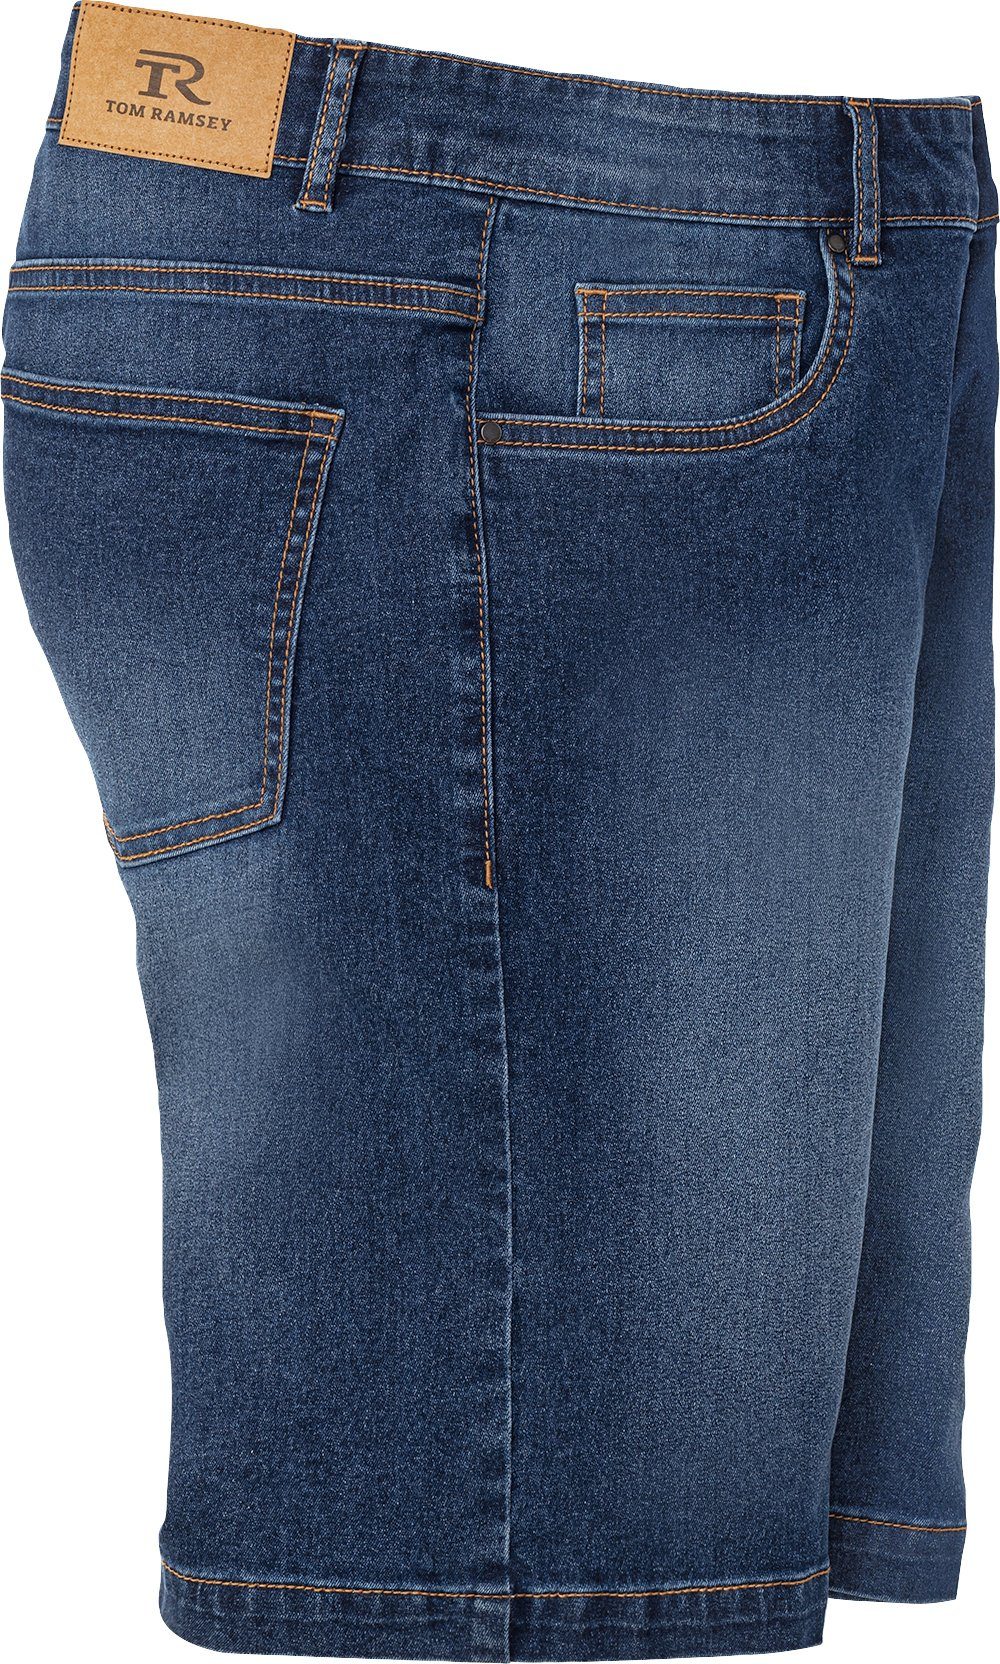 Tom Ramsey Jeansbermudas im mit 5-Pocket-Style dunkelblau Bund durch optimaler Passform flexiblen